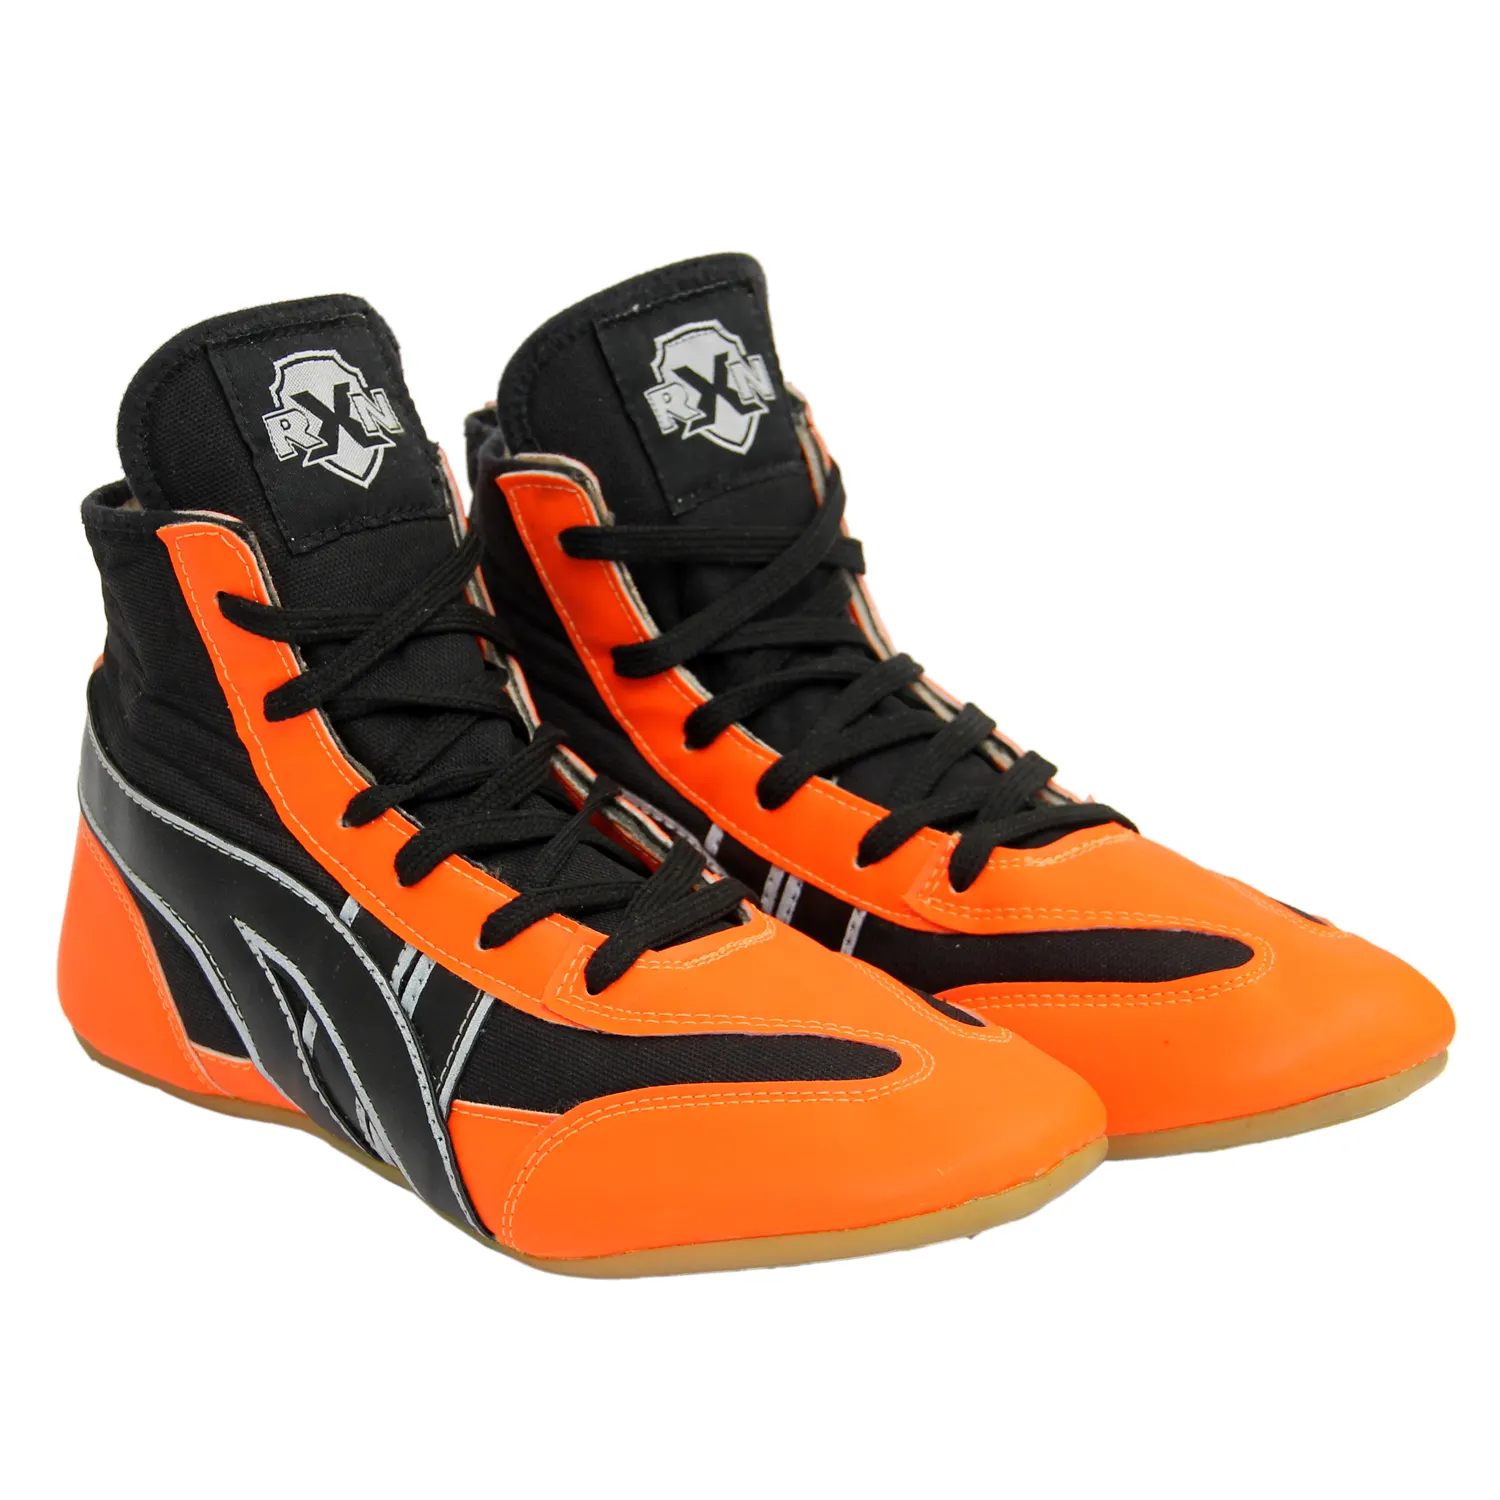 Новейшая Модальная обувь для борьбы RXN для мужчин и детей, оптовая продажа, дешевая кожаная спортивная обувь для борьбы для мужчин